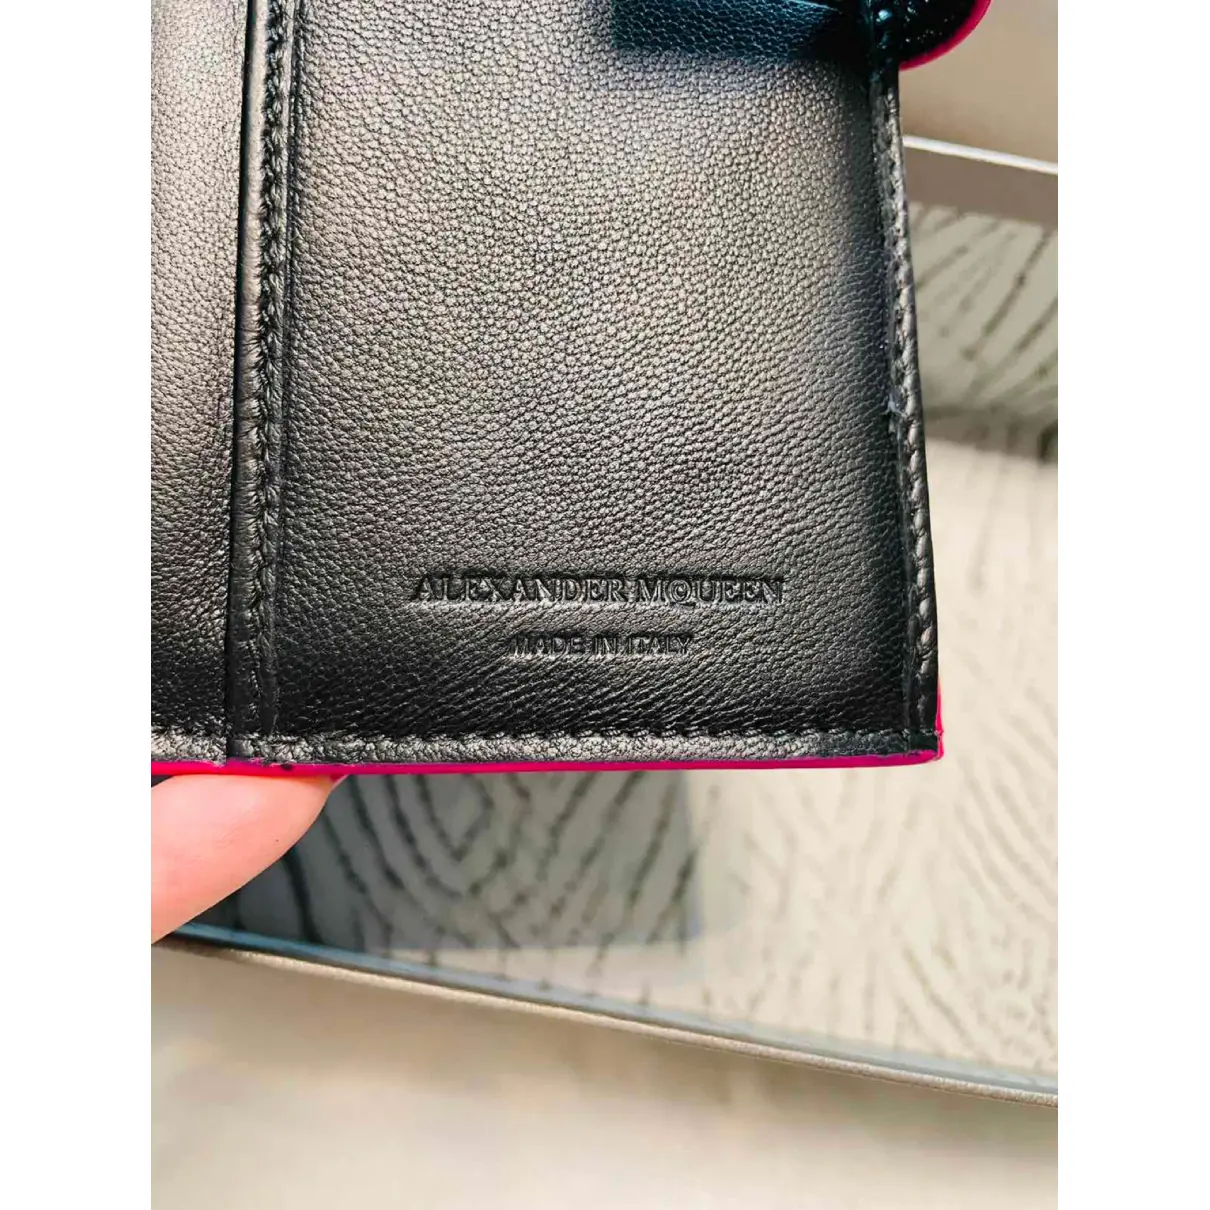 Buy Alexander McQueen Leather wallet online